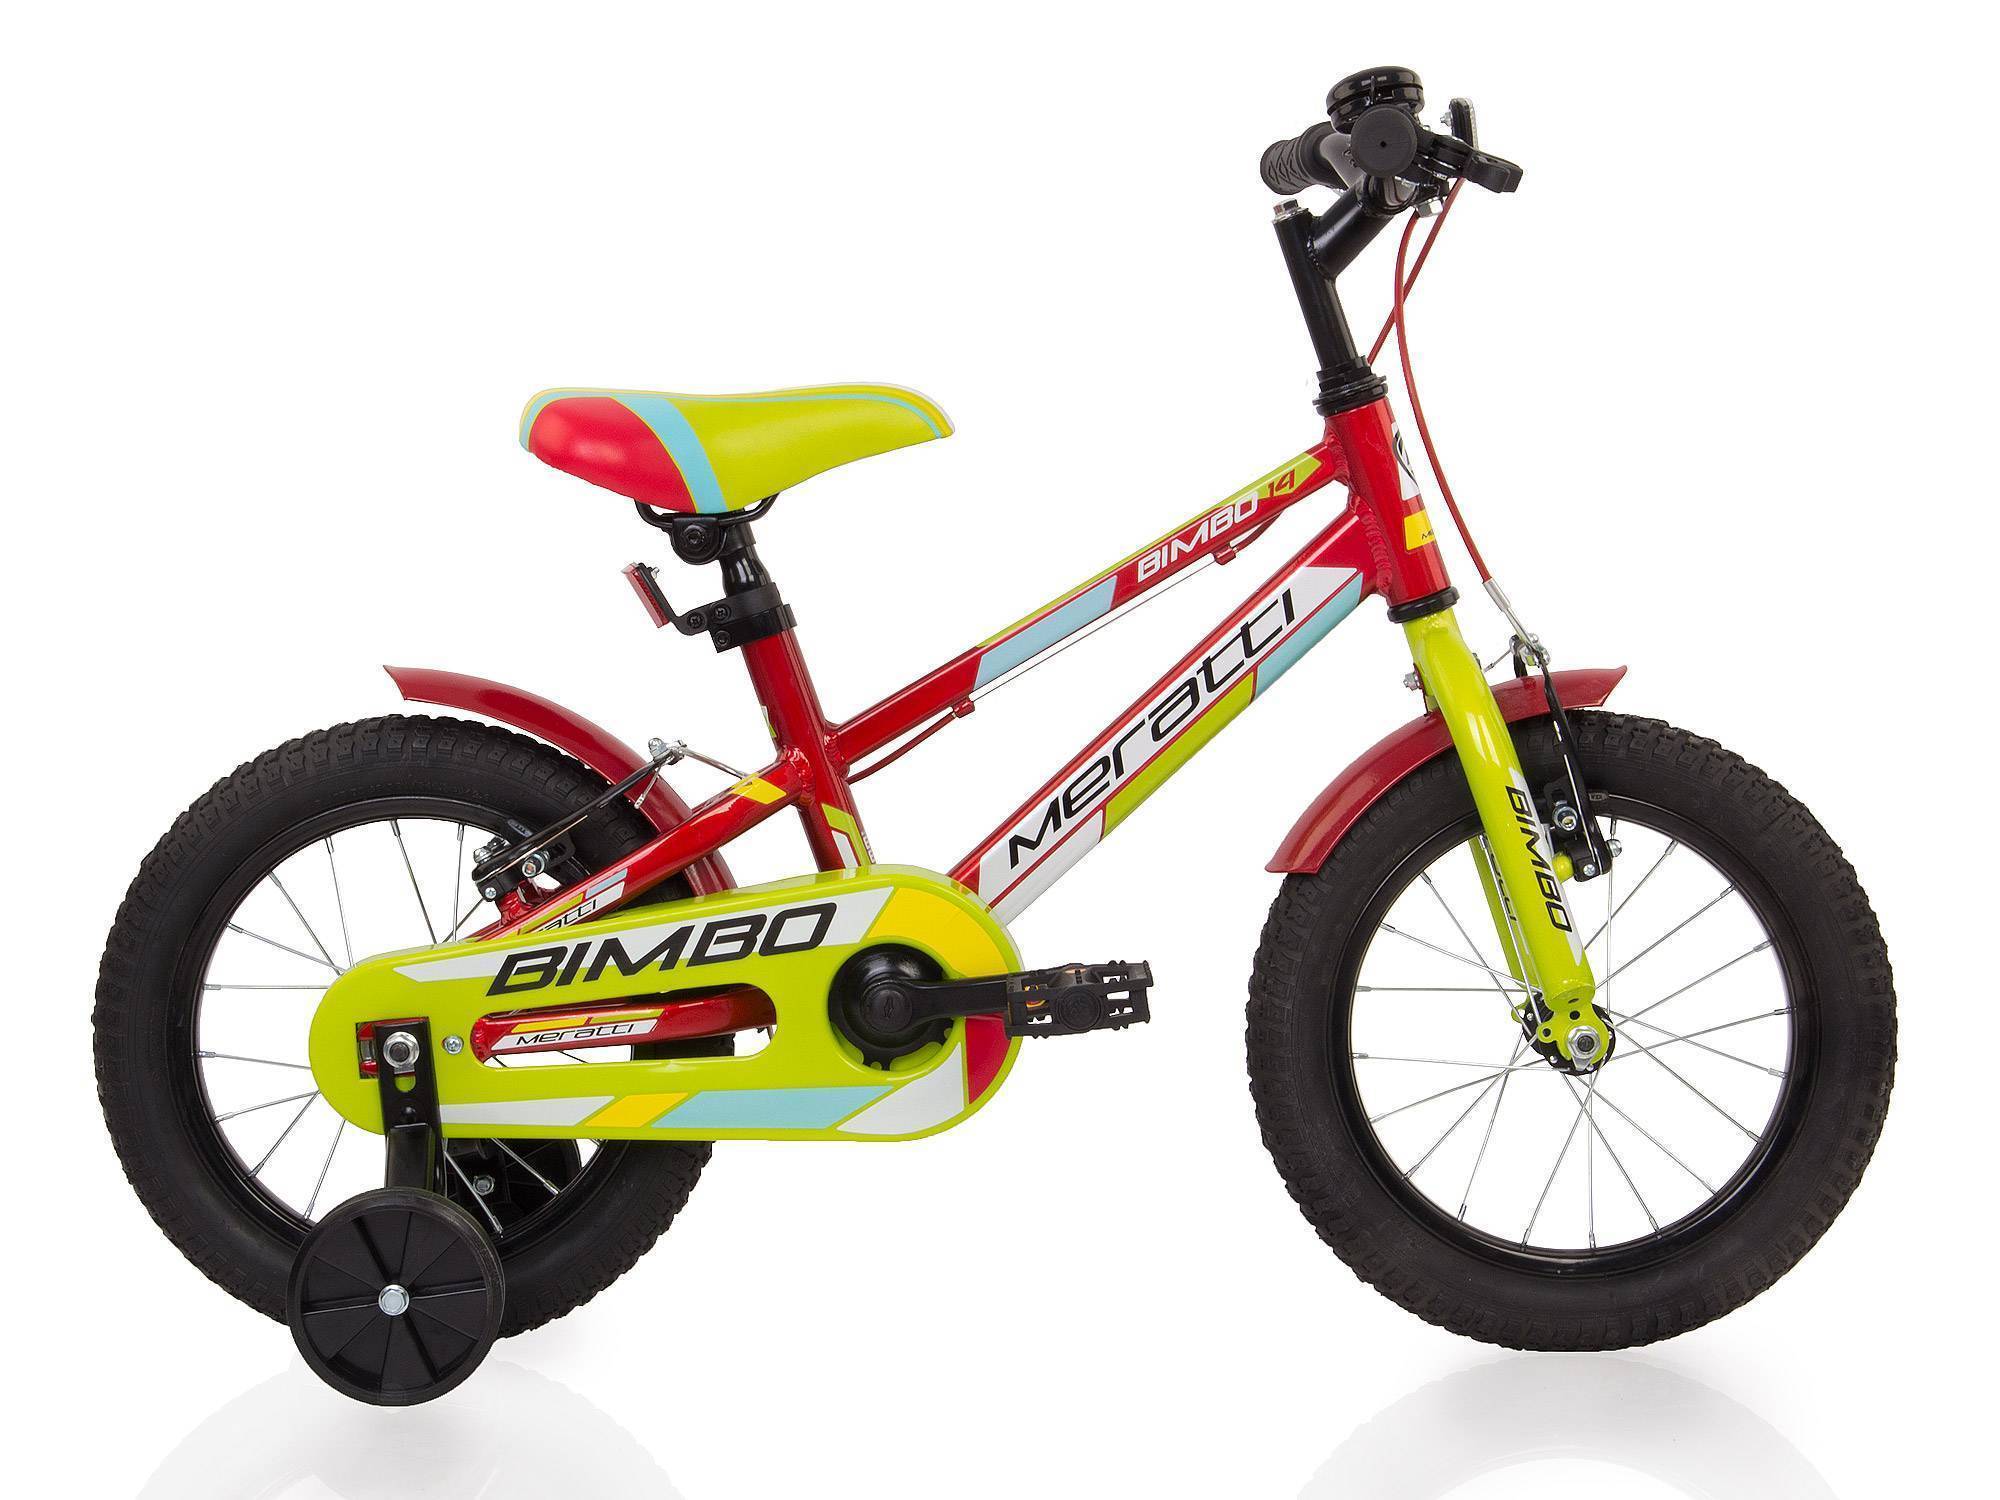 Купить детский велосипед в ростове на дону. Велосипед Мератти Бимбо 14. Велосипед 24 Meratti. Велосипед Meratti детский. Велосипед Meratti красный.